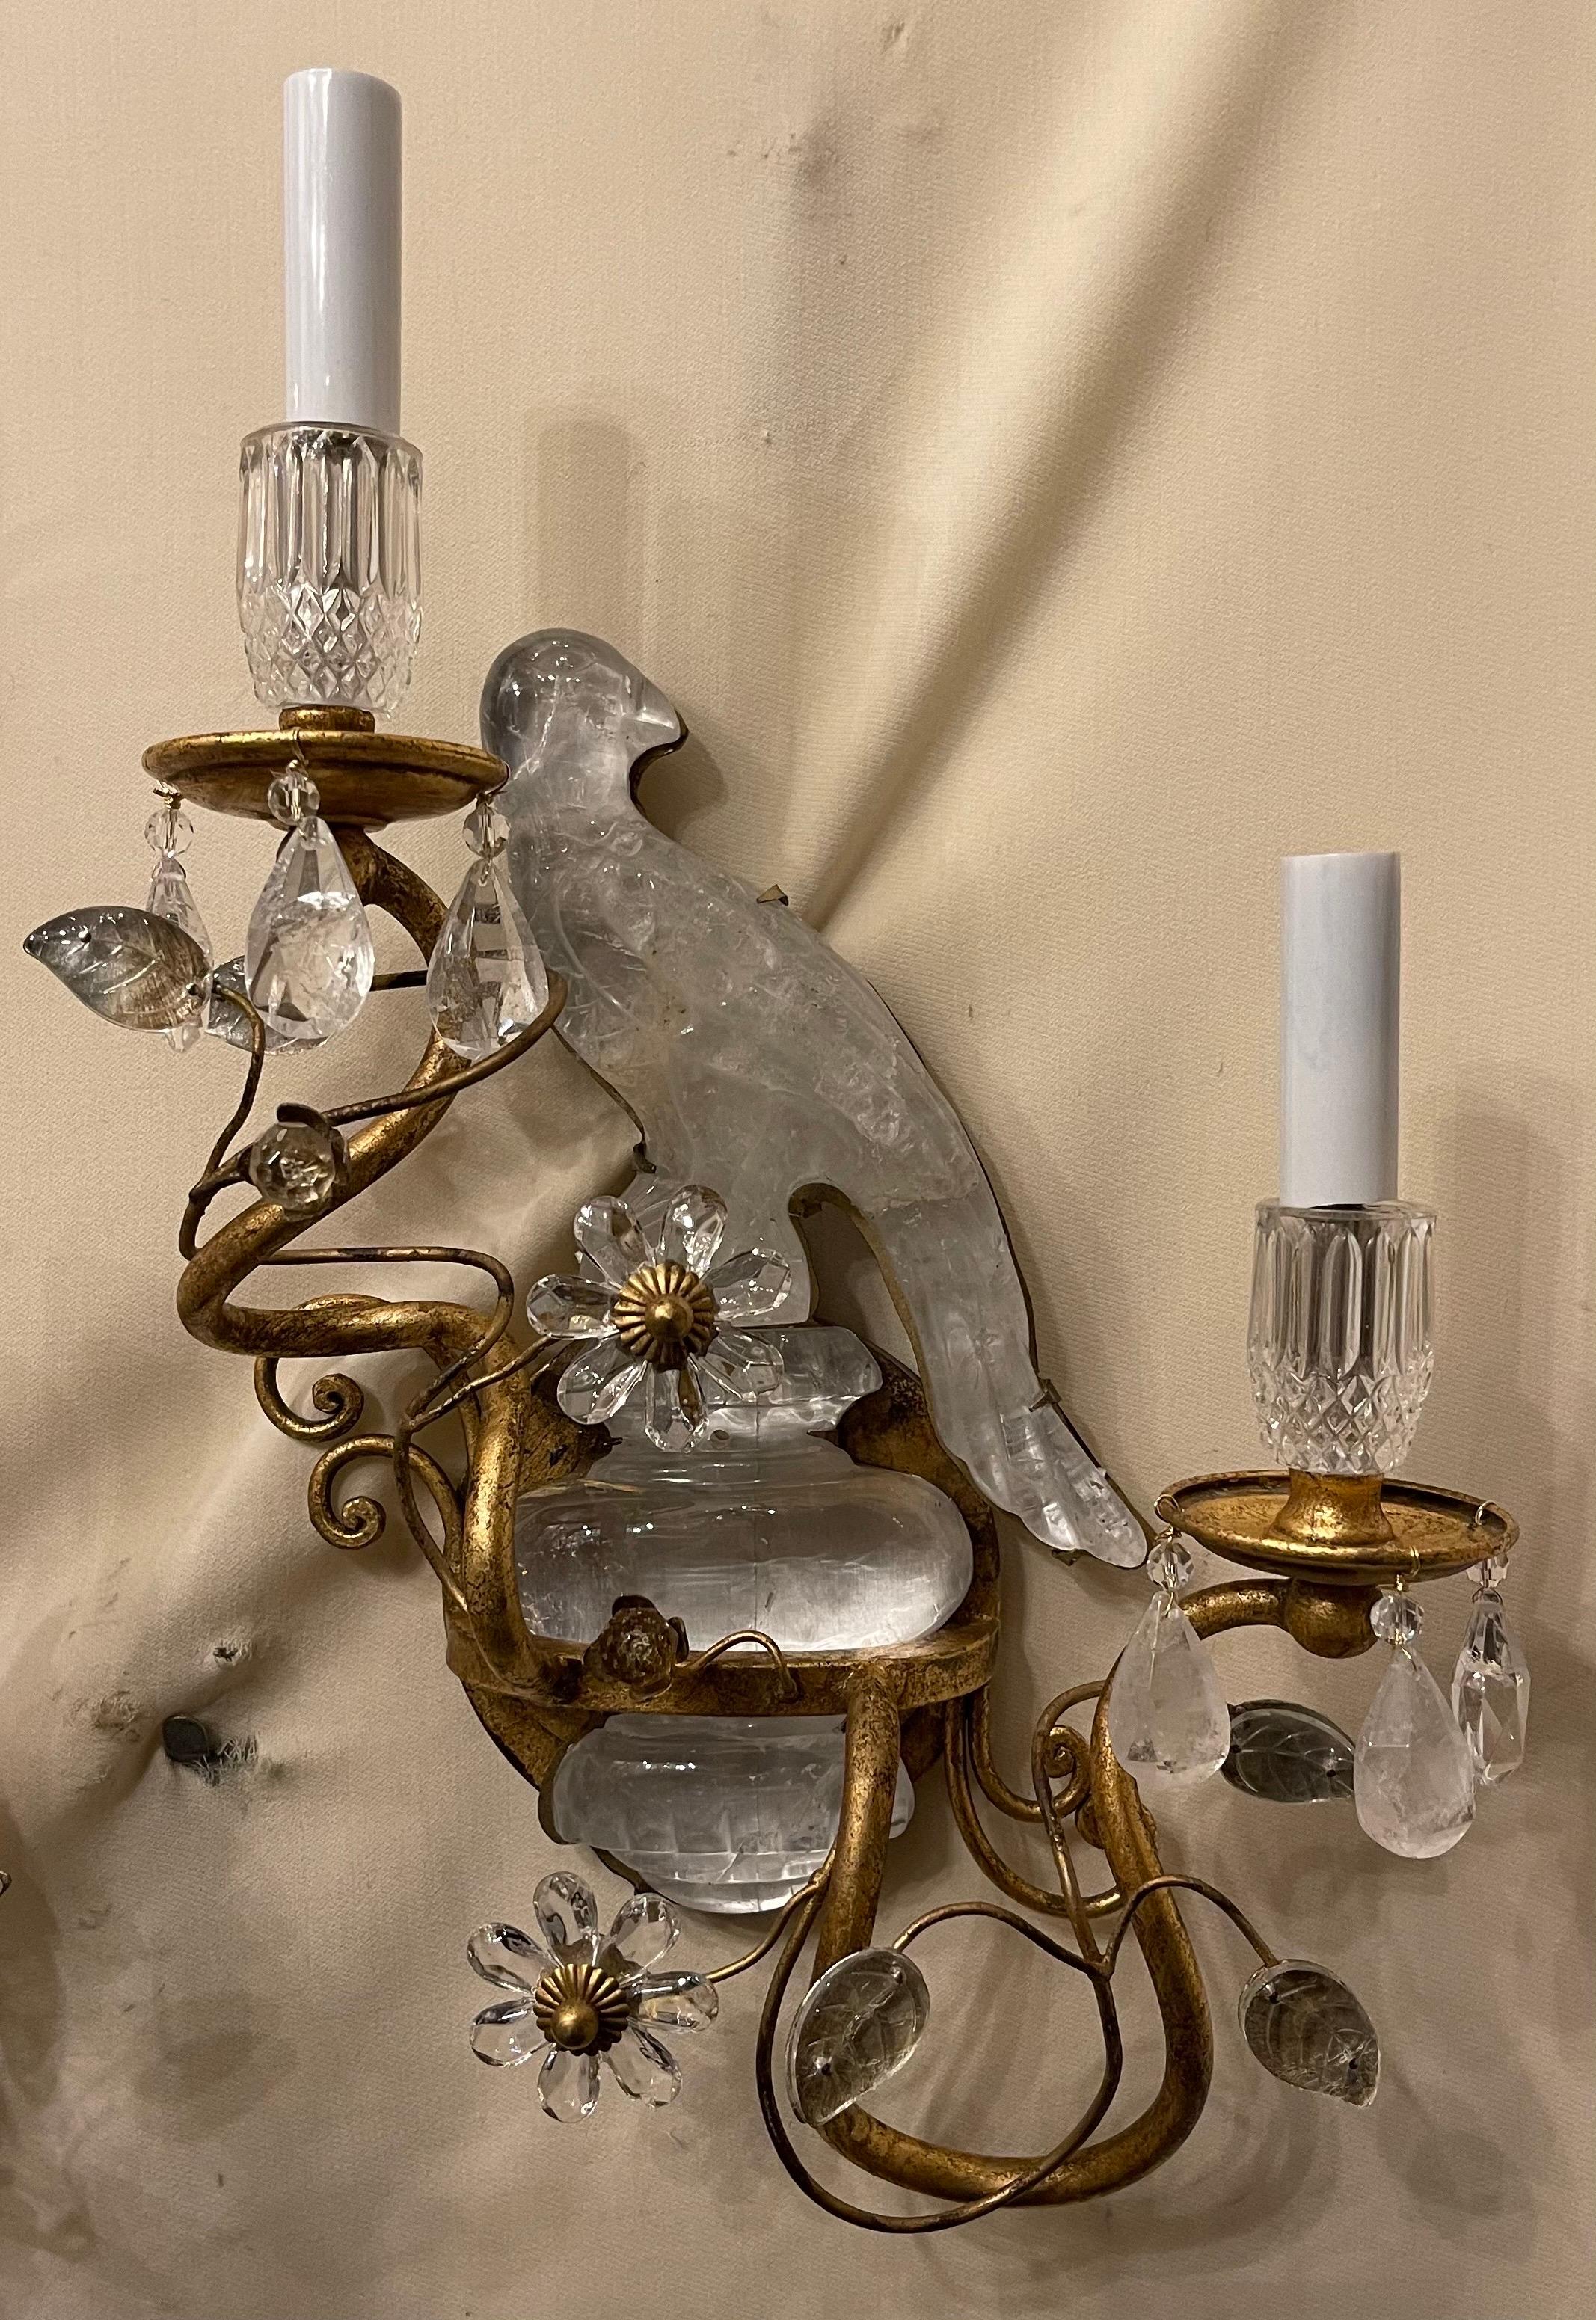 Merveilleuse paire d'appliques de style Maison Baguès à deux chandeliers en cristal de roche avec oiseau/perroquet reposant sur une urne.
Les deux oiseaux en cristal de roche ont été réparés et le câblage a été mis à jour.